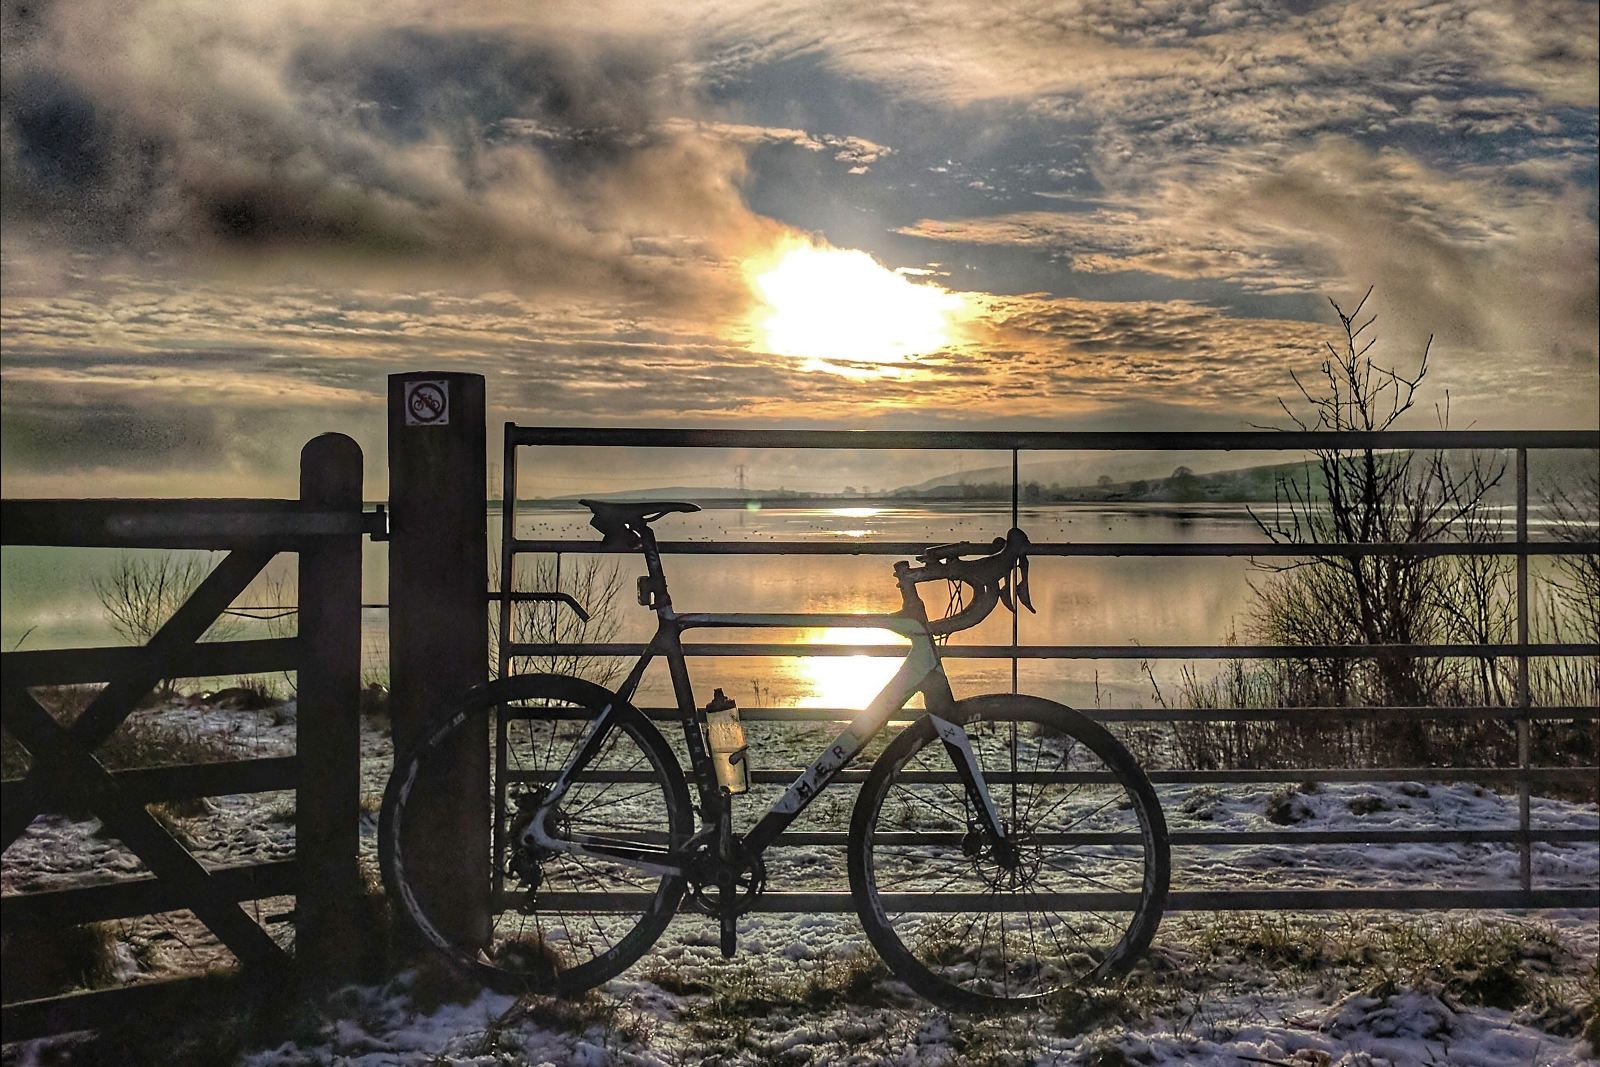 Bike against setting sun